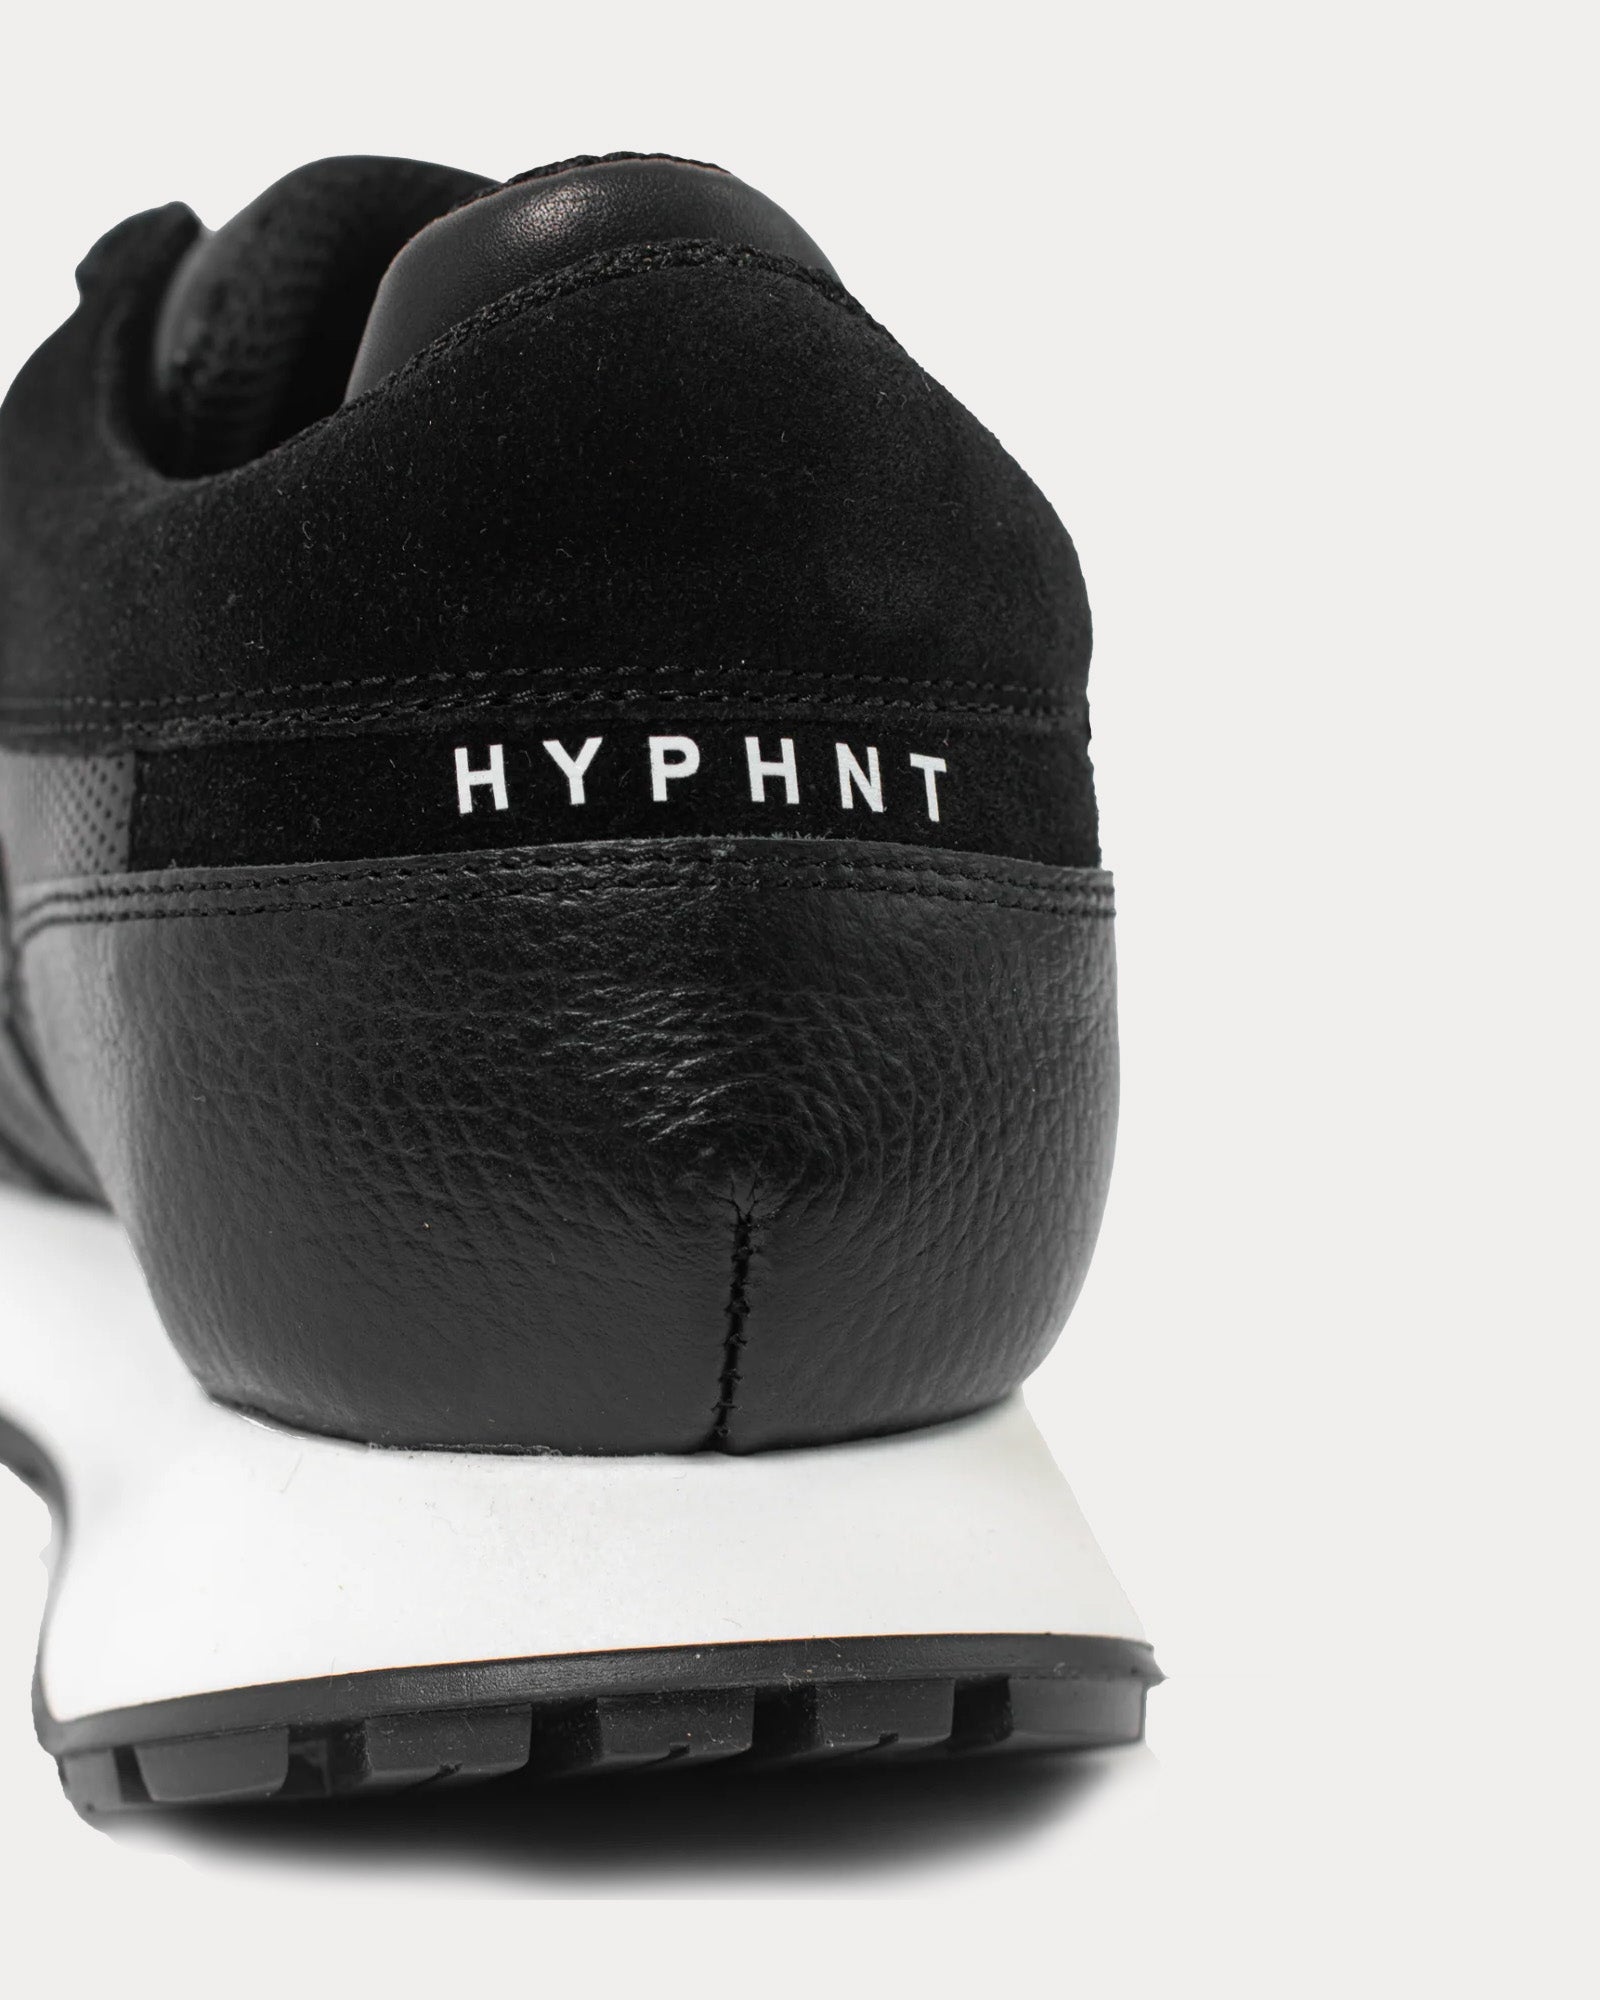 Hyphnt - Road Runner Mr Black Low Top Sneakers